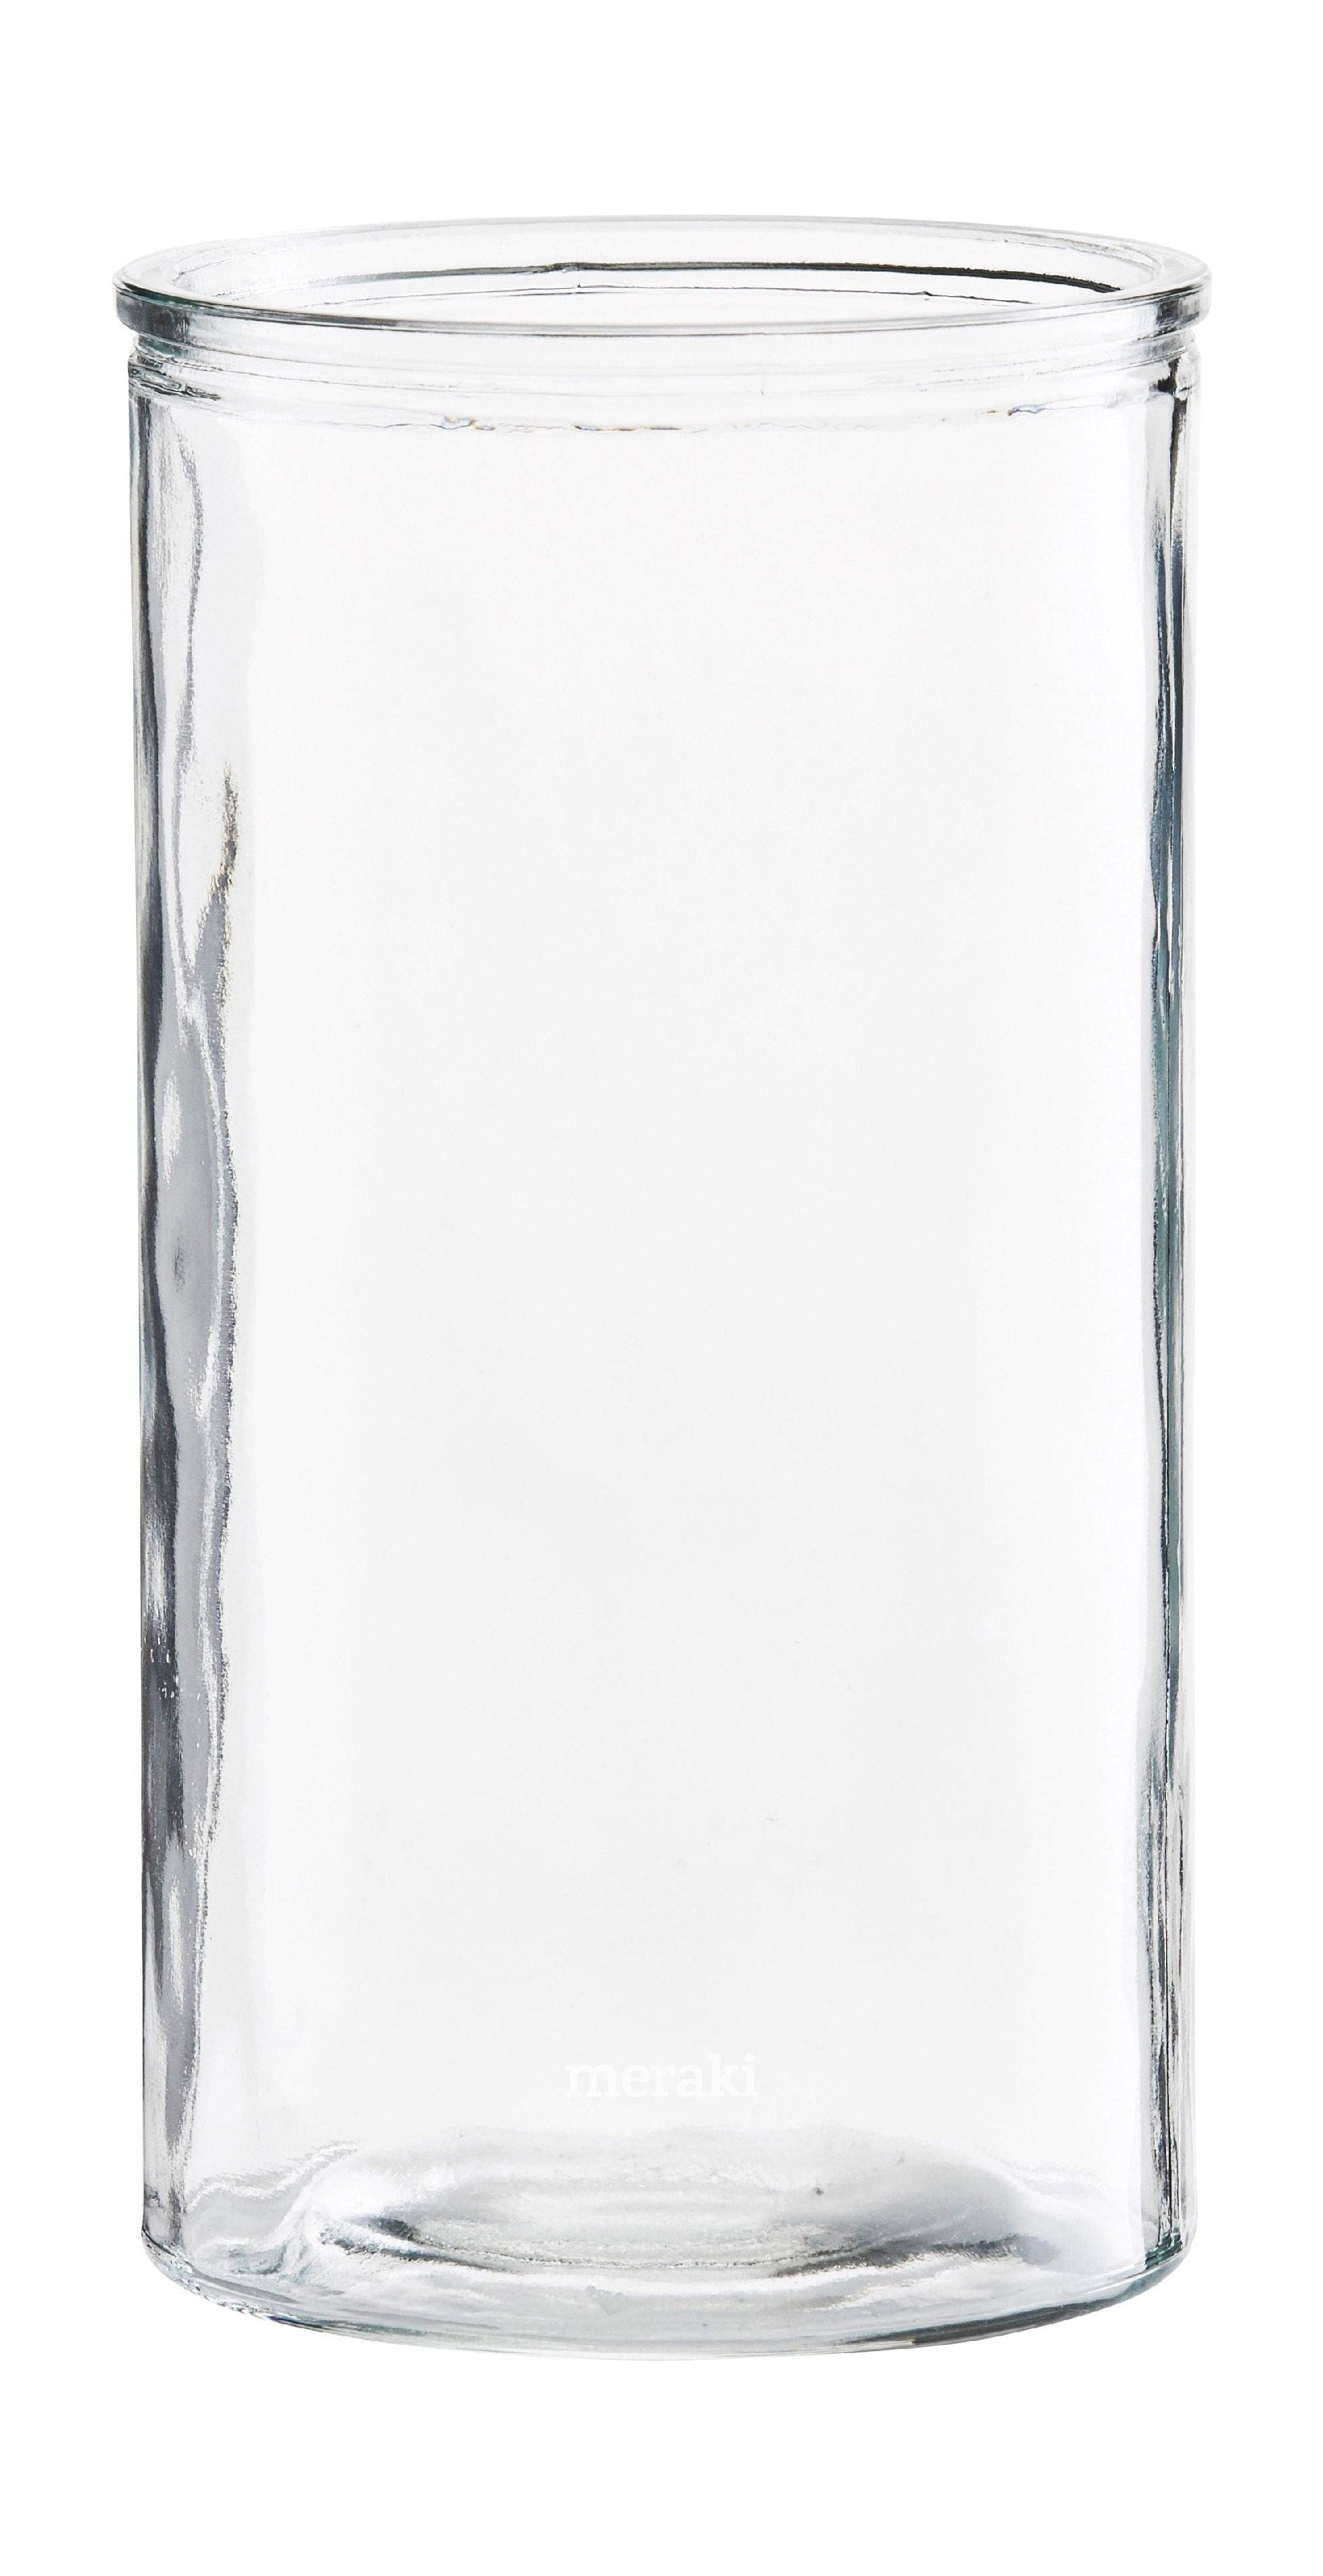 Meraki Zylinder-Vase, øx H 13x24